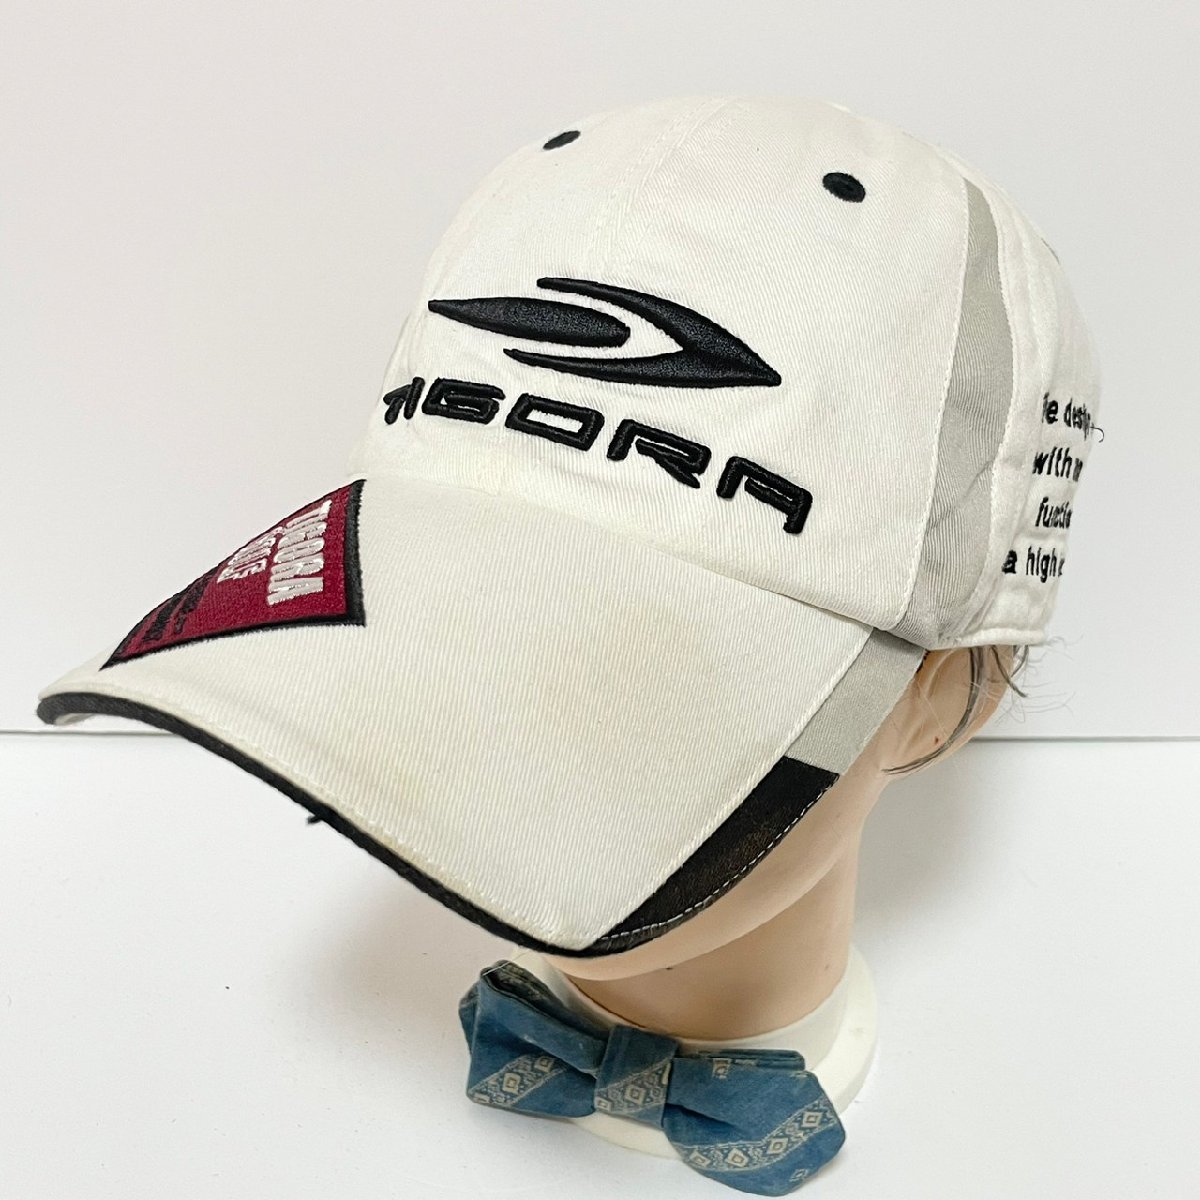 (^w^)btigola Golf колпак шляпа белый TIGORA GOLF цельный Logo вышивка japa-na спорт "дышит" липучка ремень ML 58.C0335EE